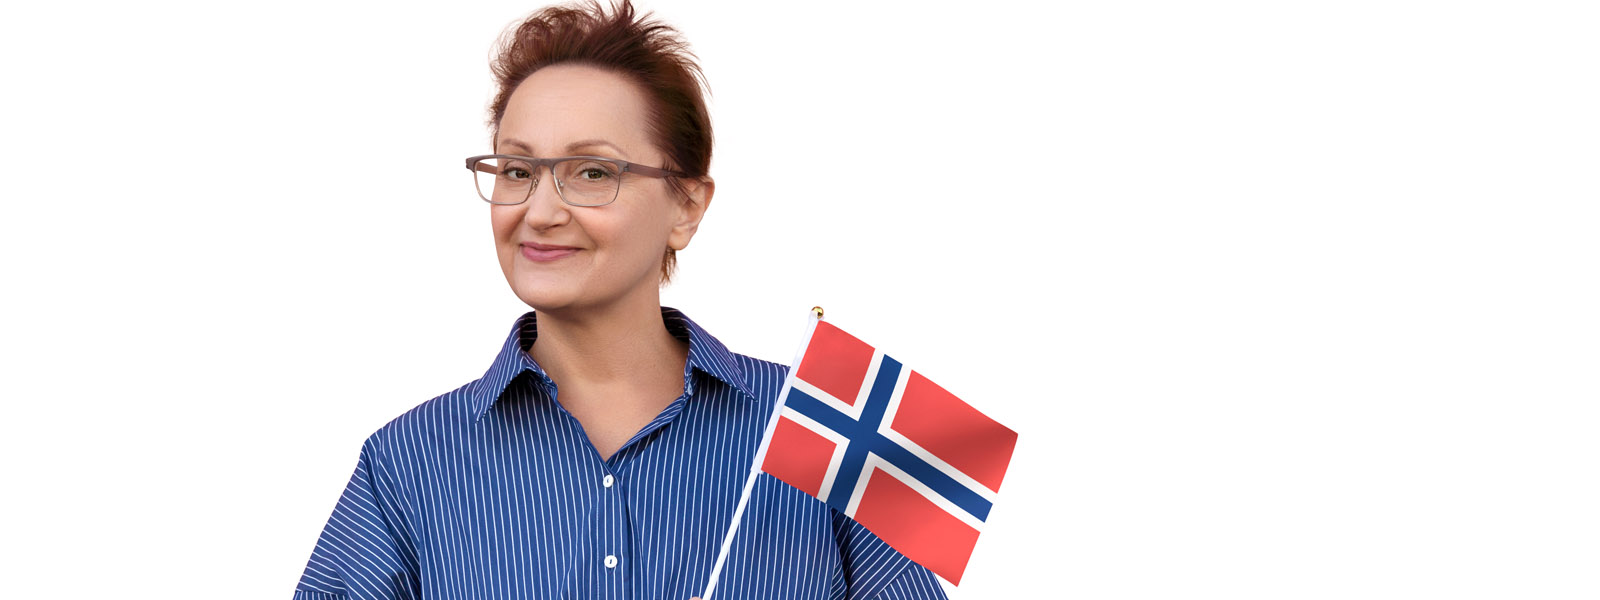 Nowe wymagania dotyczące znajomości języka norweskiego dla osób starających się o obywatelstwo w Norwegii.